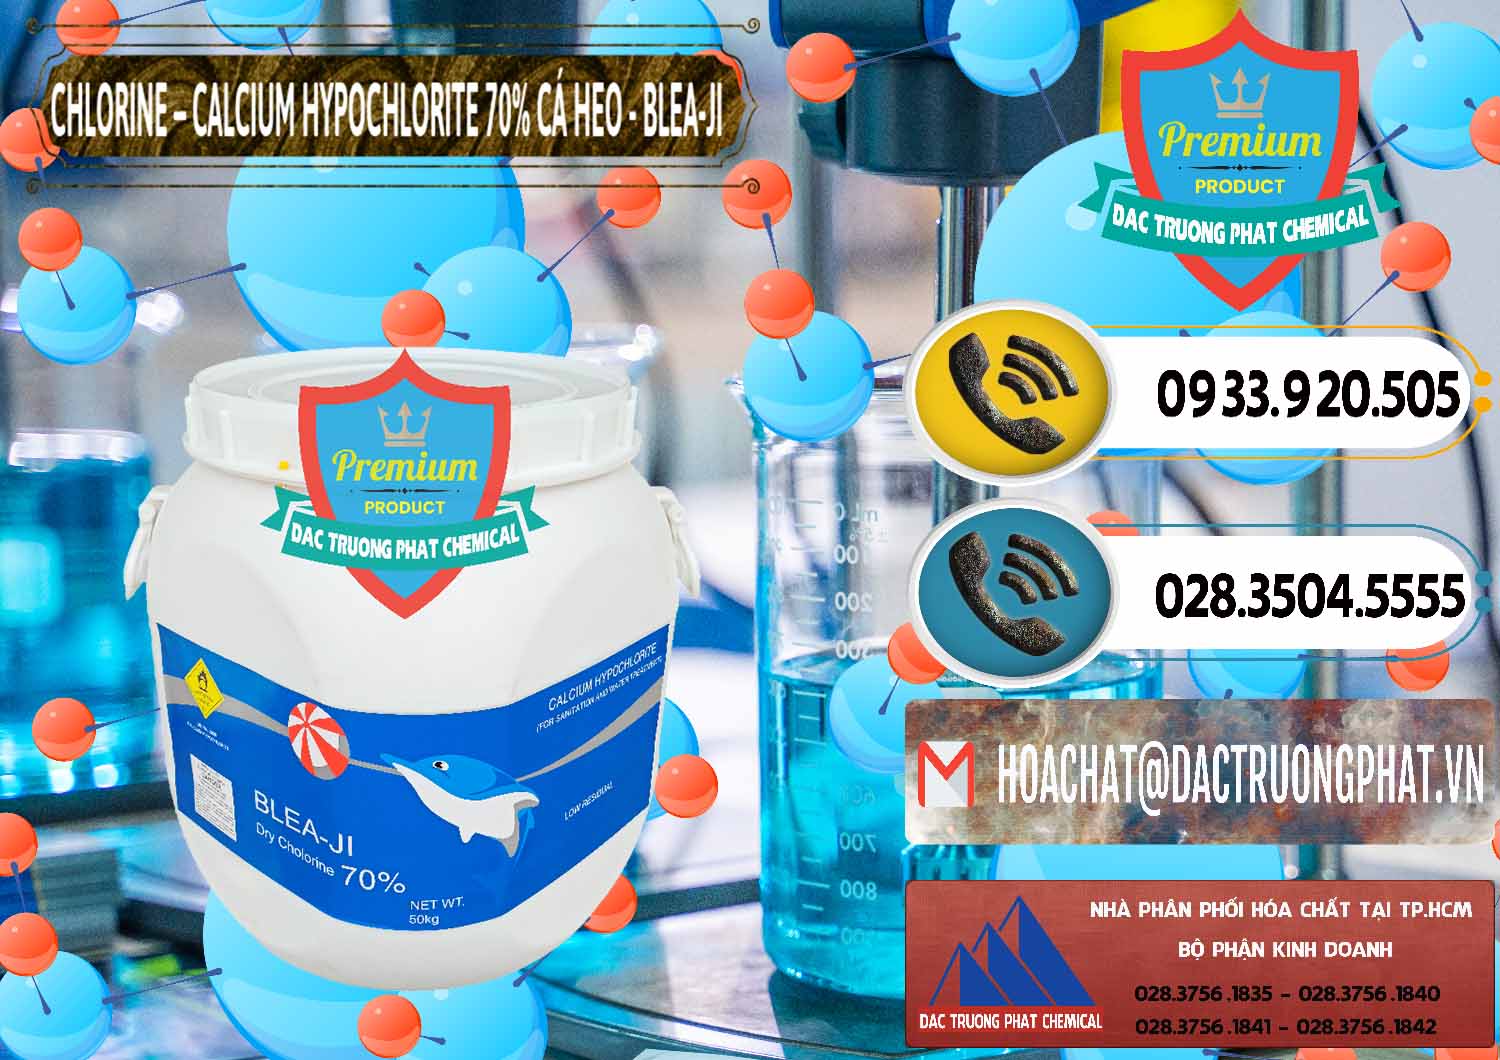 Công ty chuyên cung cấp & bán Clorin - Chlorine Cá Heo 70% Blea-Ji Trung Quốc China - 0056 - Cty kinh doanh - cung cấp hóa chất tại TP.HCM - hoachatdetnhuom.vn